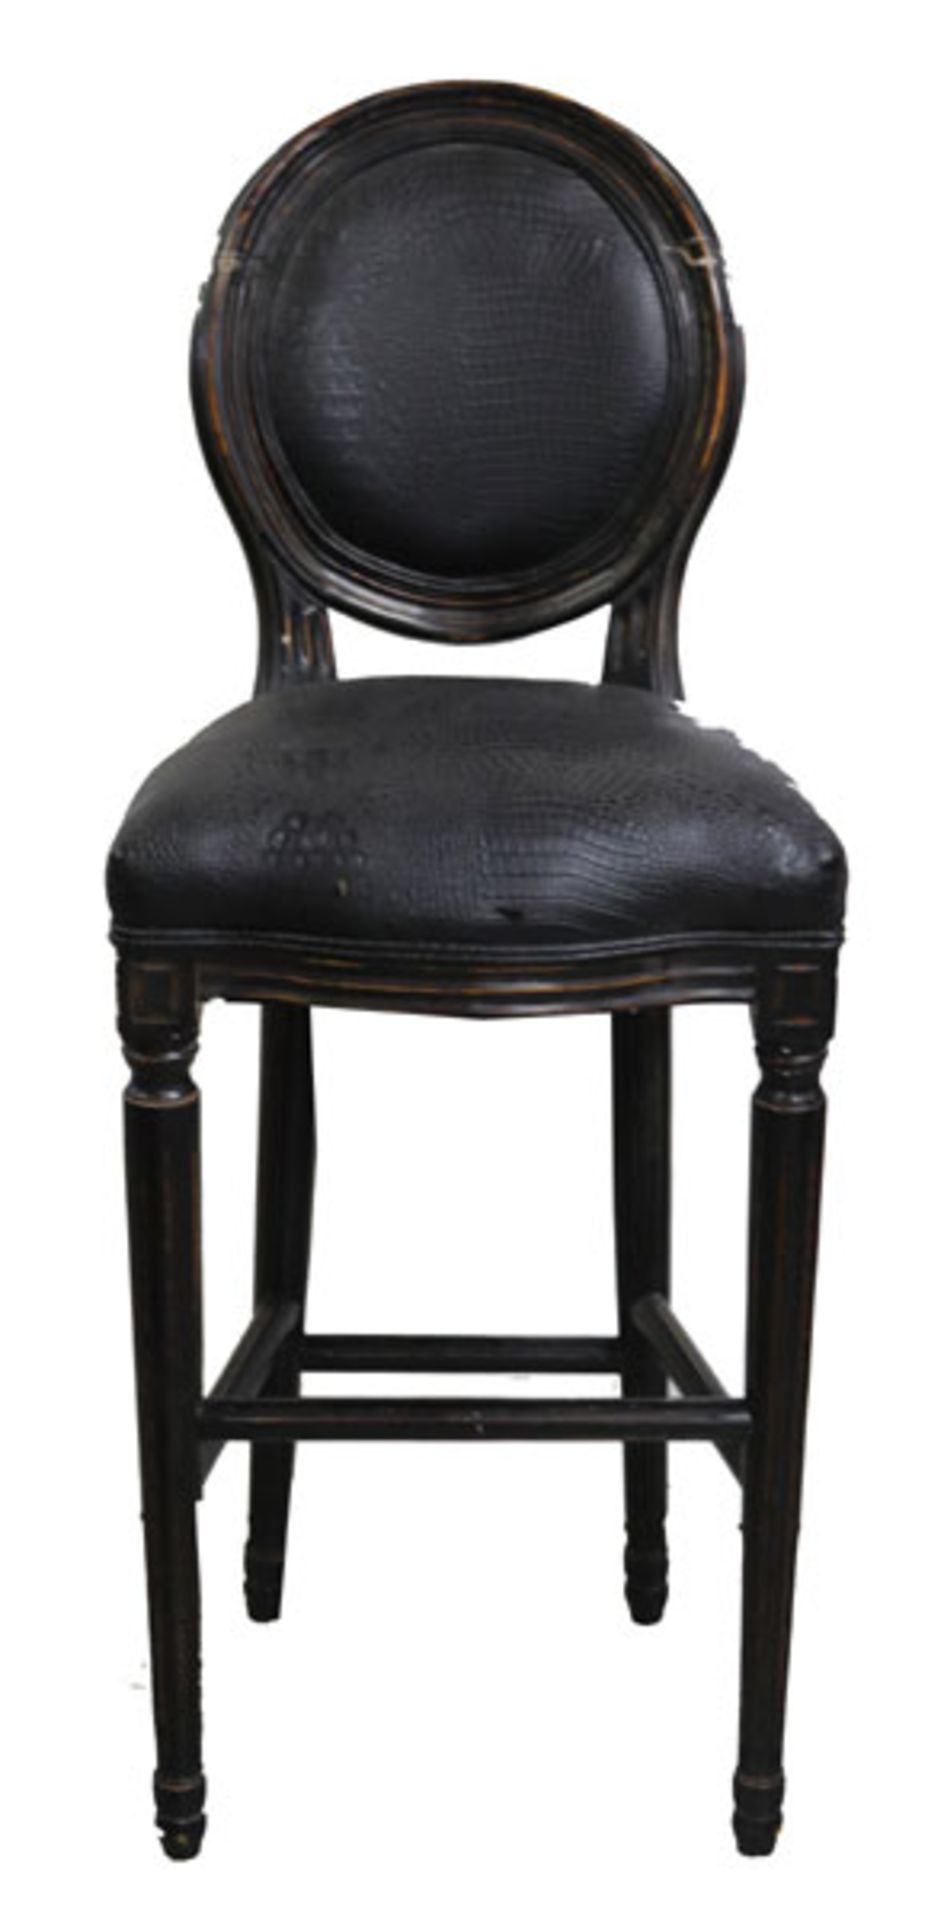 Paar schwarze Barhocker, Sitz und Lehne gepolstert, H 120 cm, B 49 cm, T 40 cm, stark beschädigt und